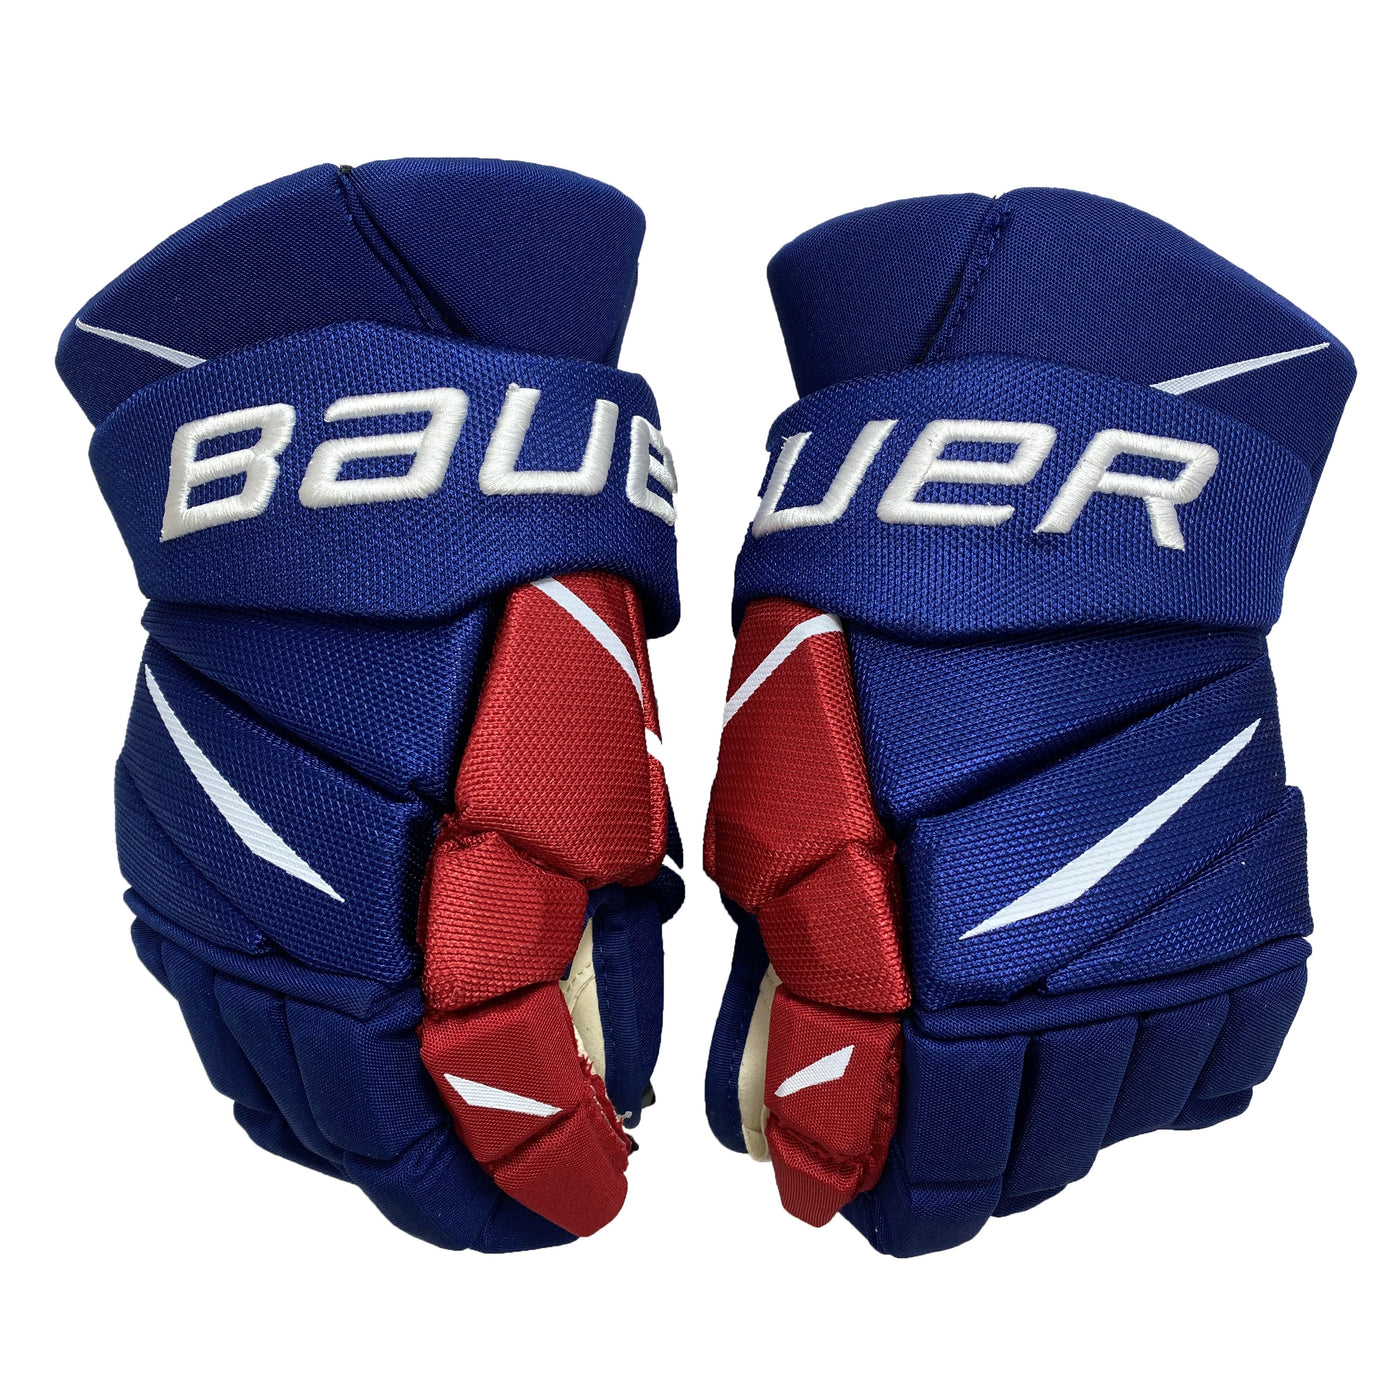 Bauer Vapor 2X Pro Team Czech Republic Pro Stock Glove